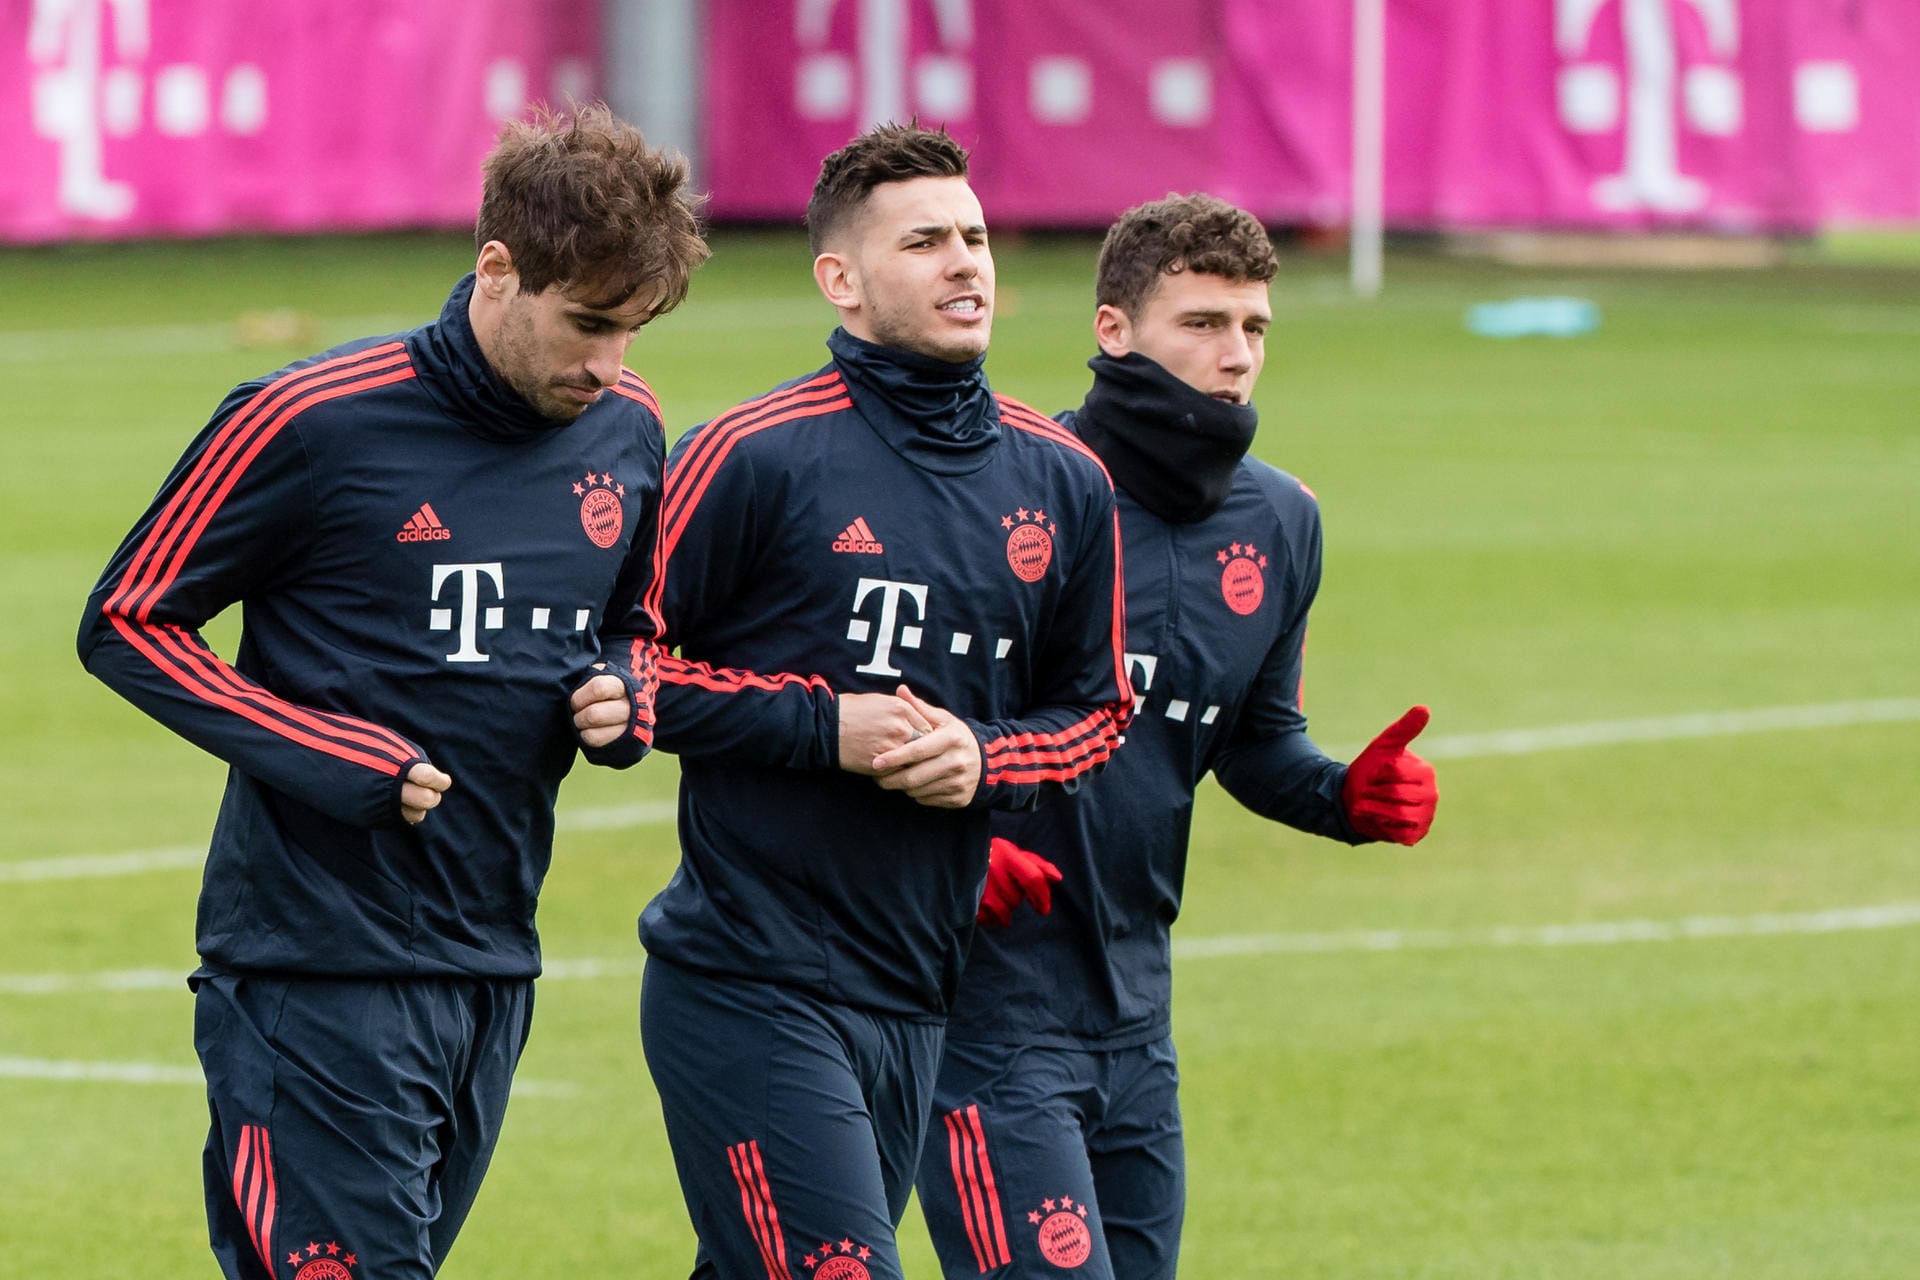 Die Stars des FC Bayern trainieren von diesem Montag an wieder auf dem Vereinsgelände – in Kleingruppen und unter strengsten Auflagen. Klicken Sie sich durch unsere Fotoshow.